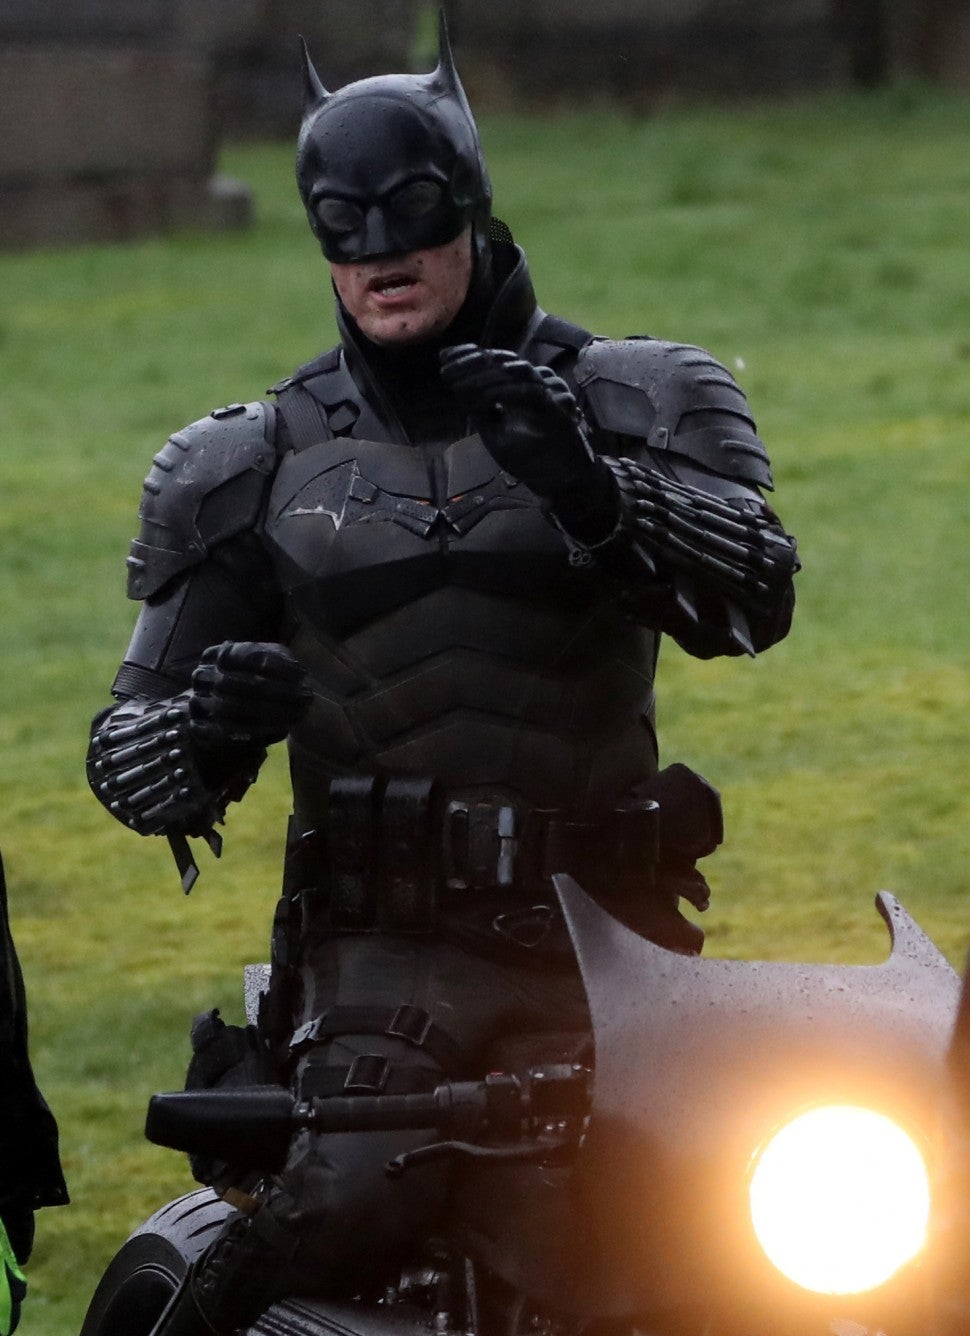 The Batman suit